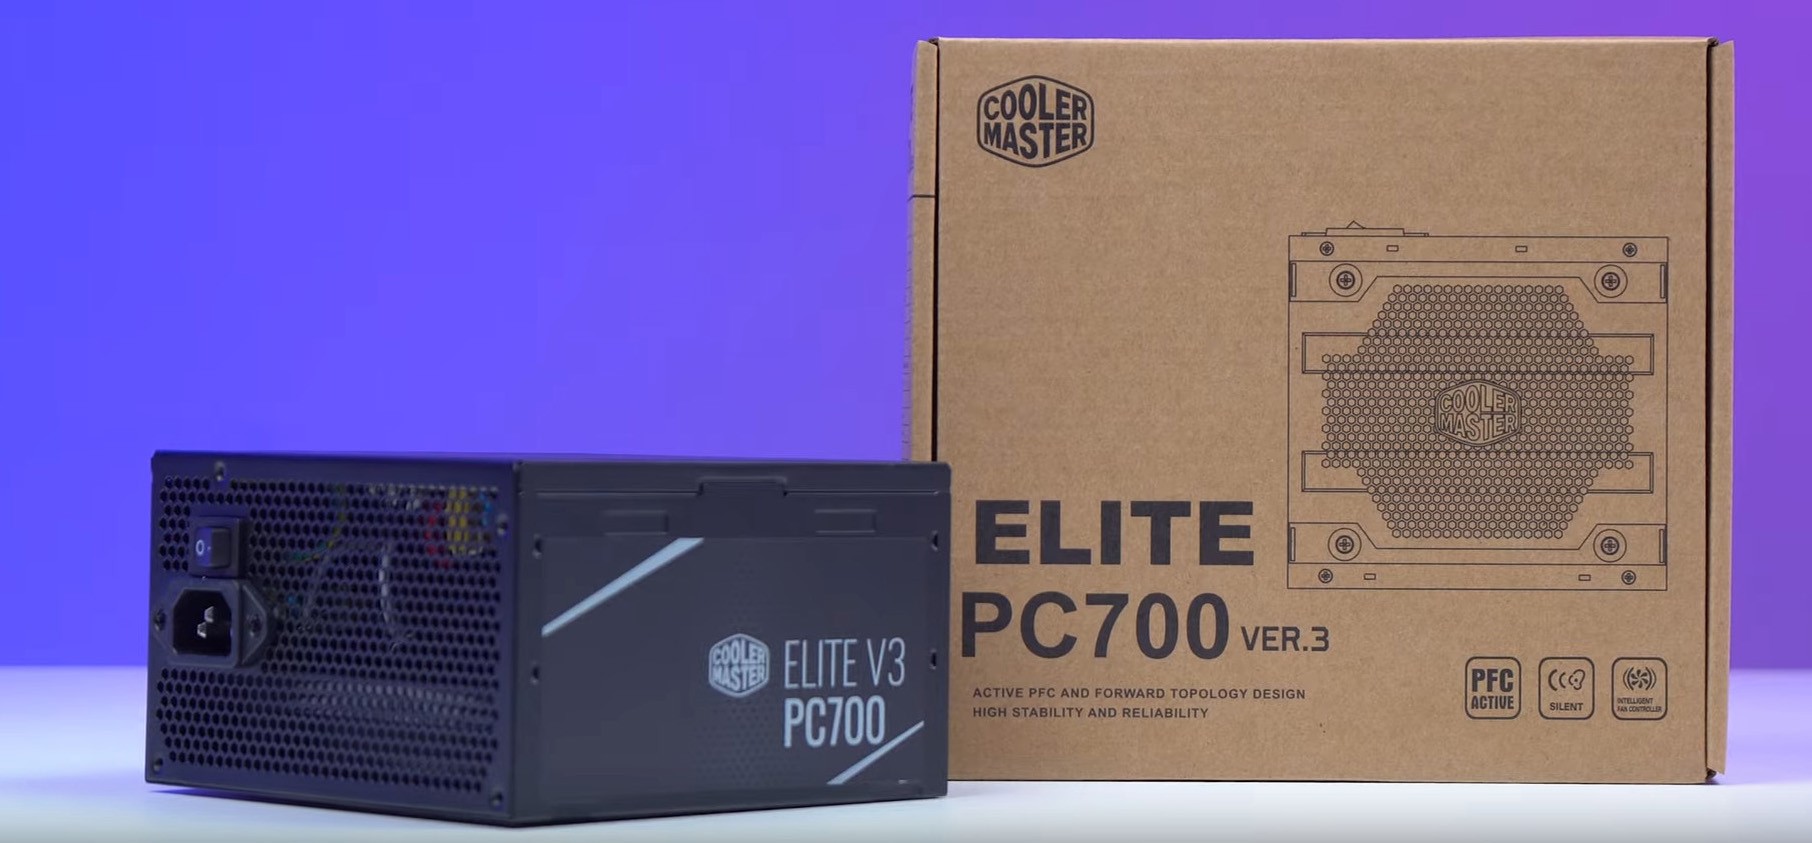 Nguồn máy tính Cooler Master Elite V3 230V PC700 700W (Màu Đen)  mới